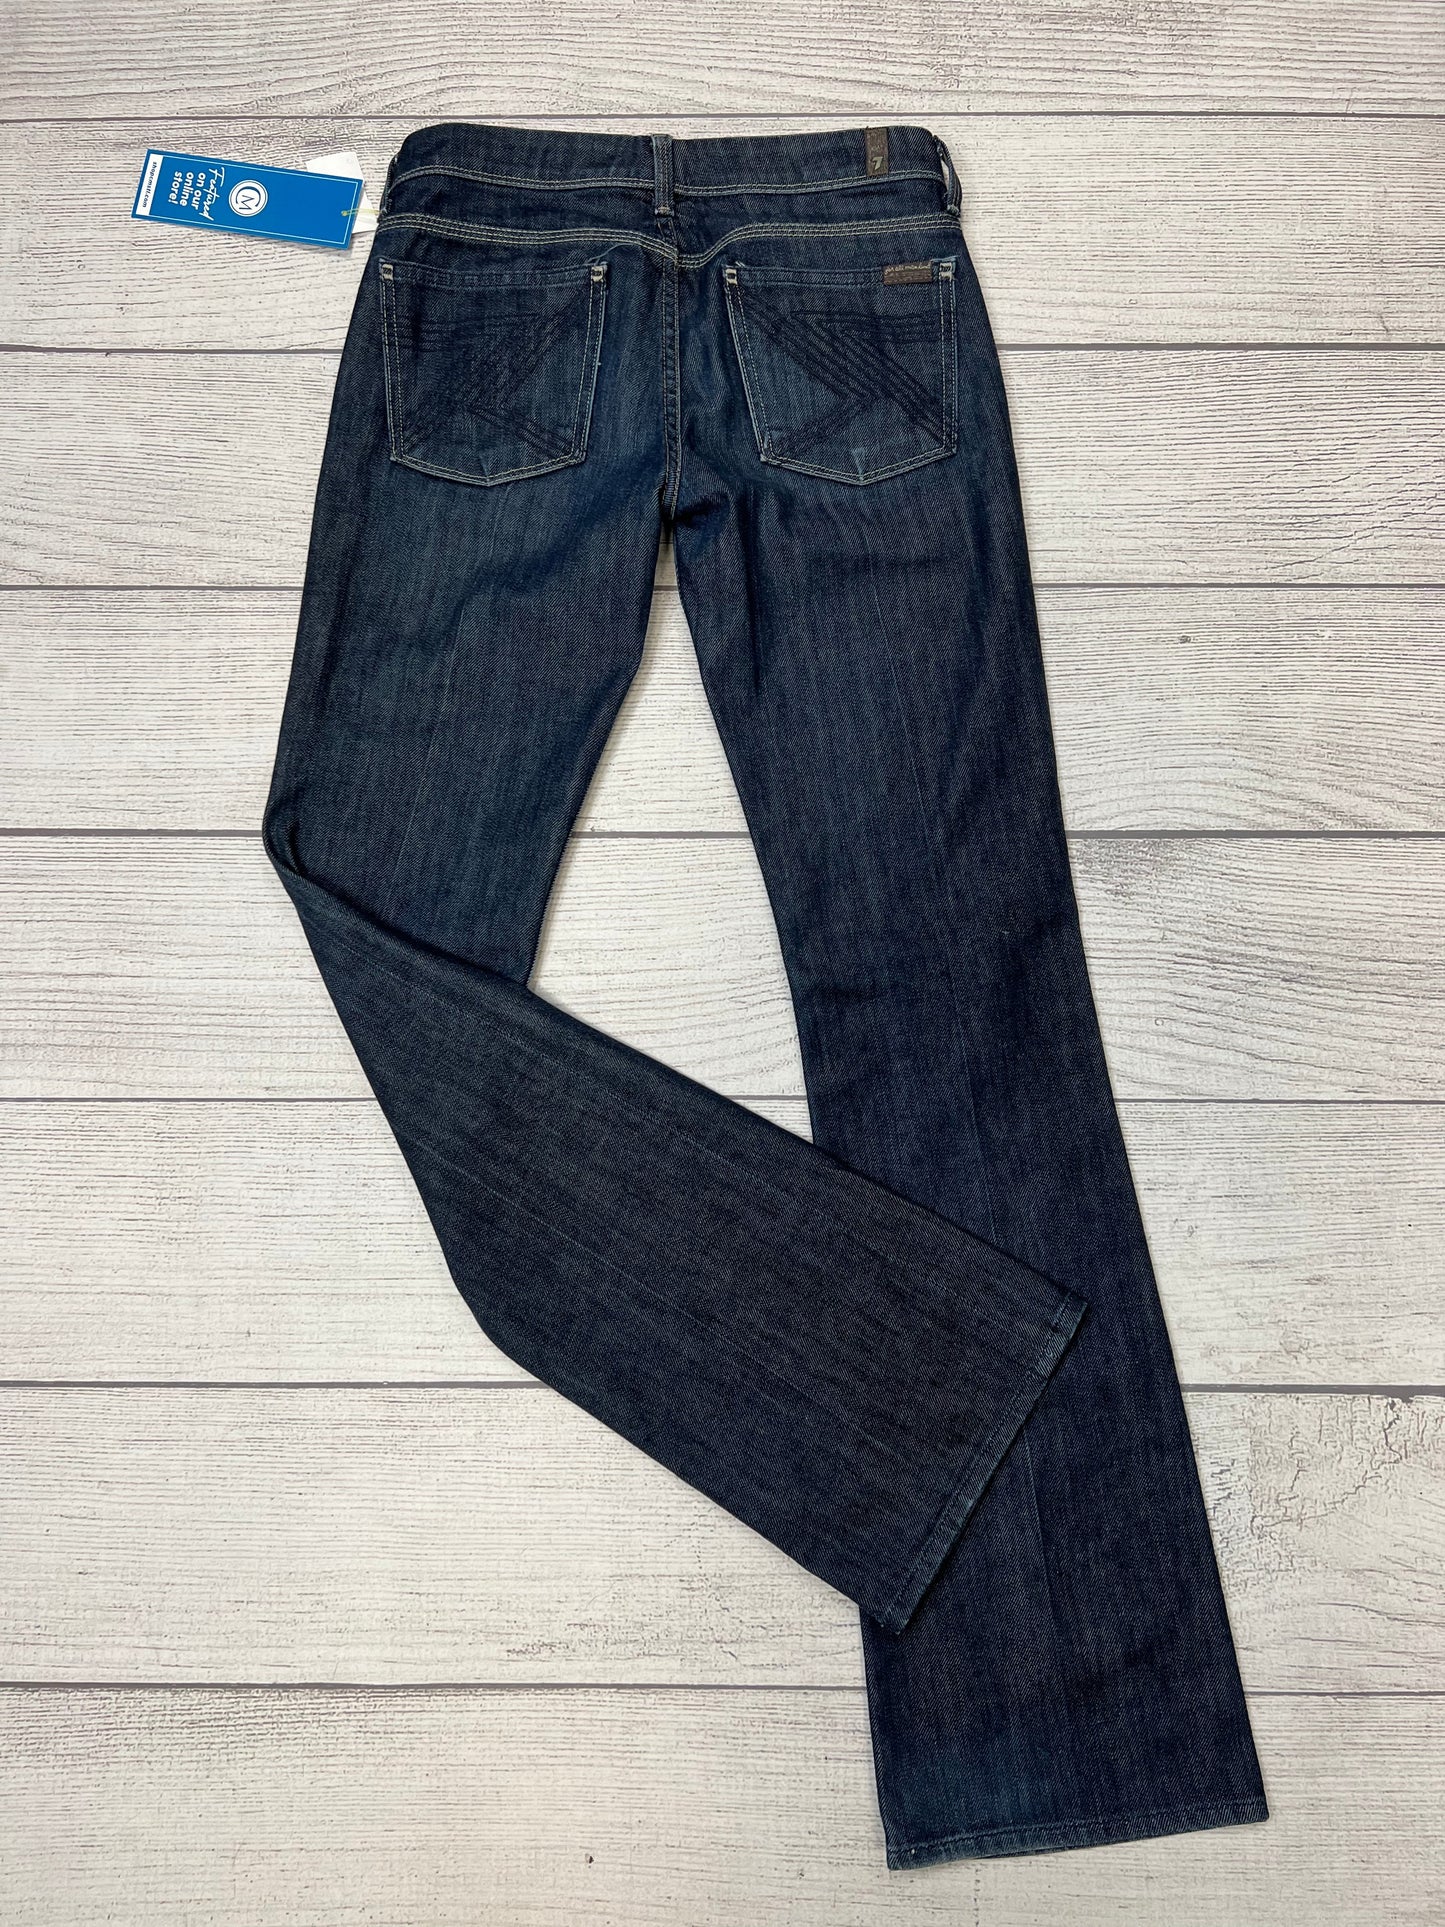 Denim Jeans Designer 7 For All Mankind, Size 4